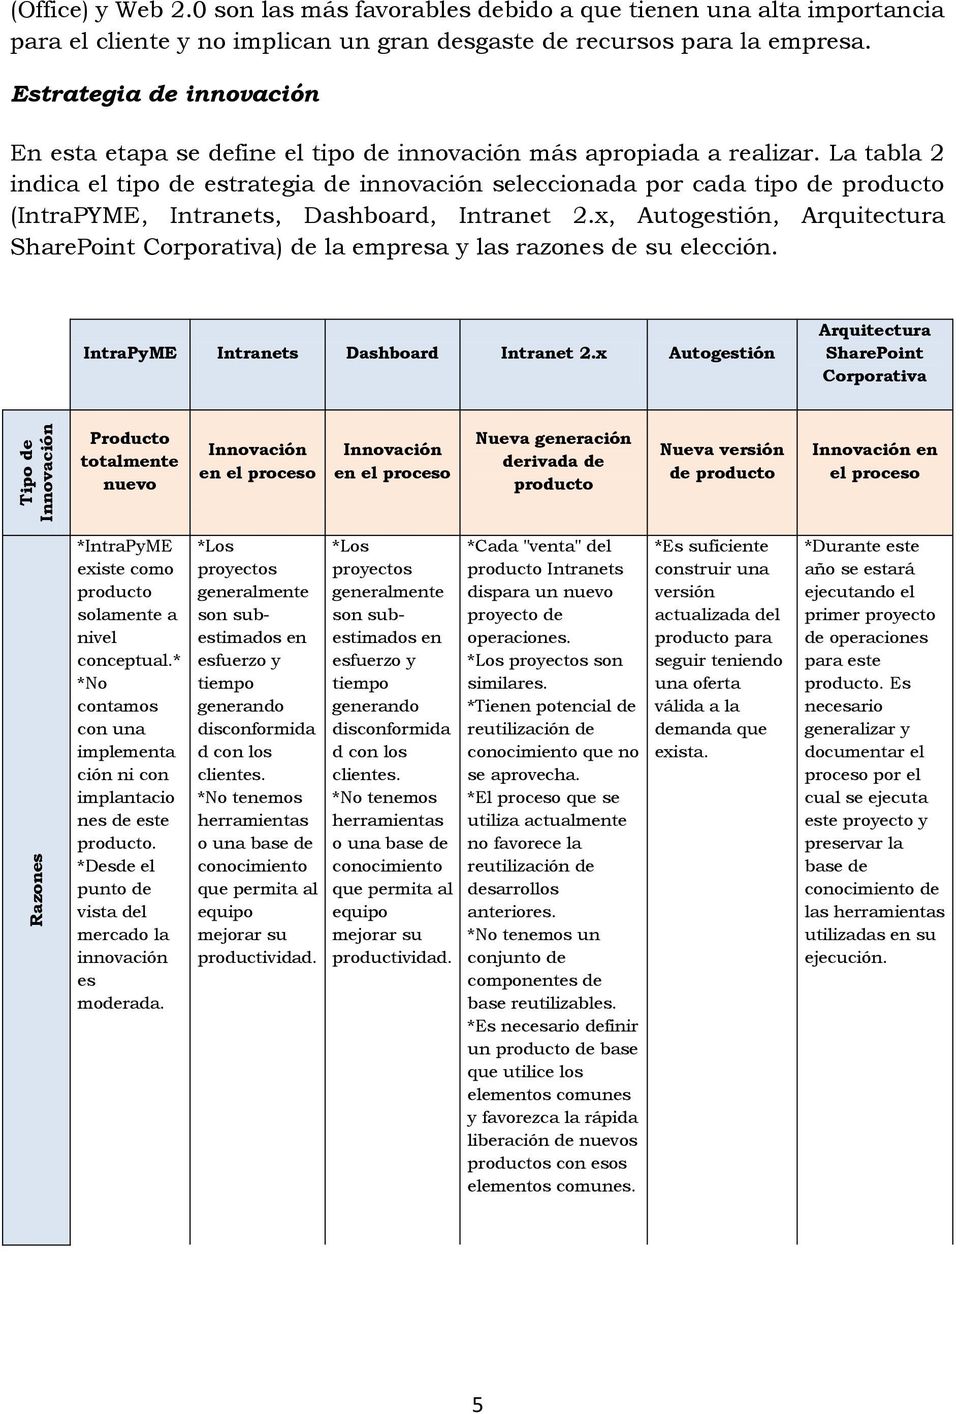 La tabla 2 indica el tipo de estrategia de innovación seleccionada por cada tipo de producto (IntraPYME, Intranets, Dashboard, Intranet 2.